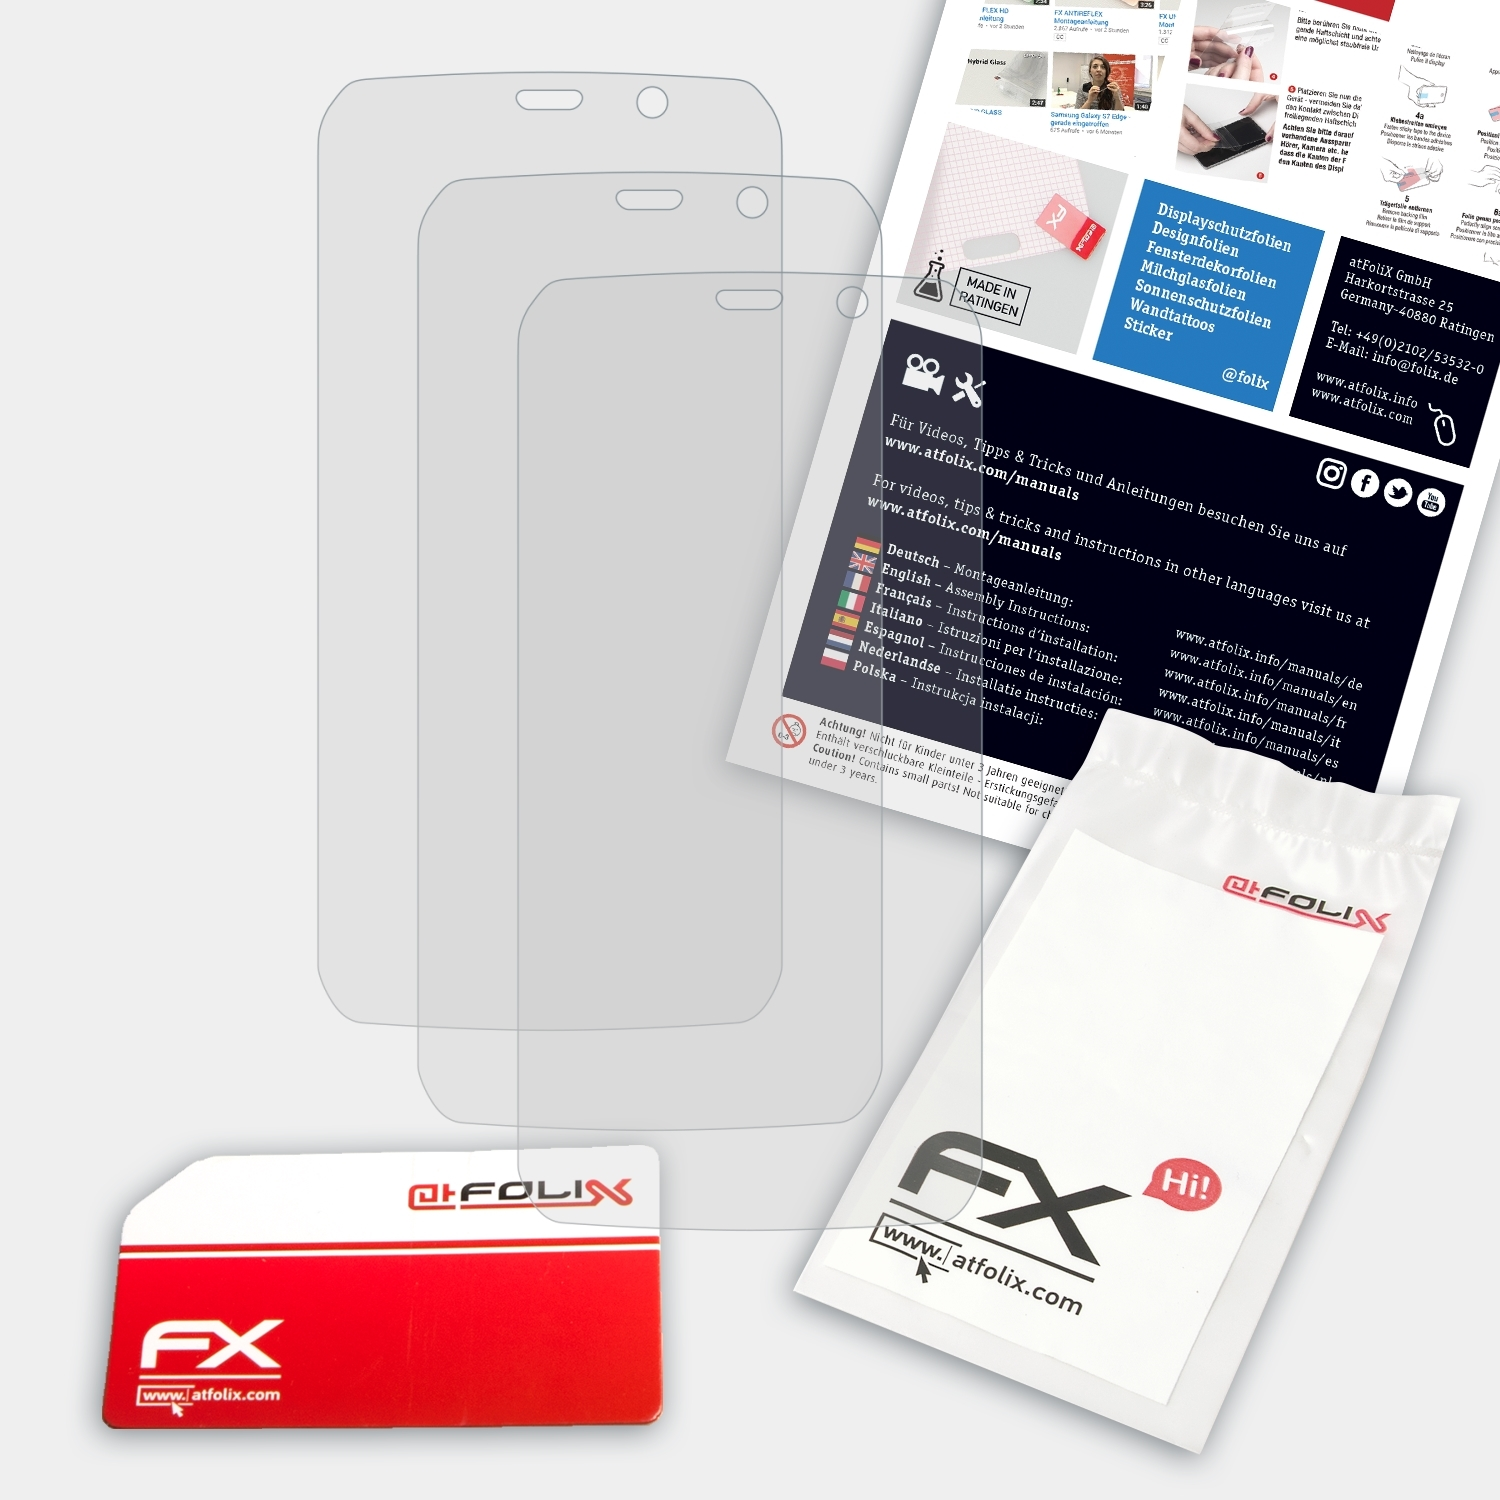 ATFOLIX 3x FX-Antireflex Displayschutz(für Vernee Active)